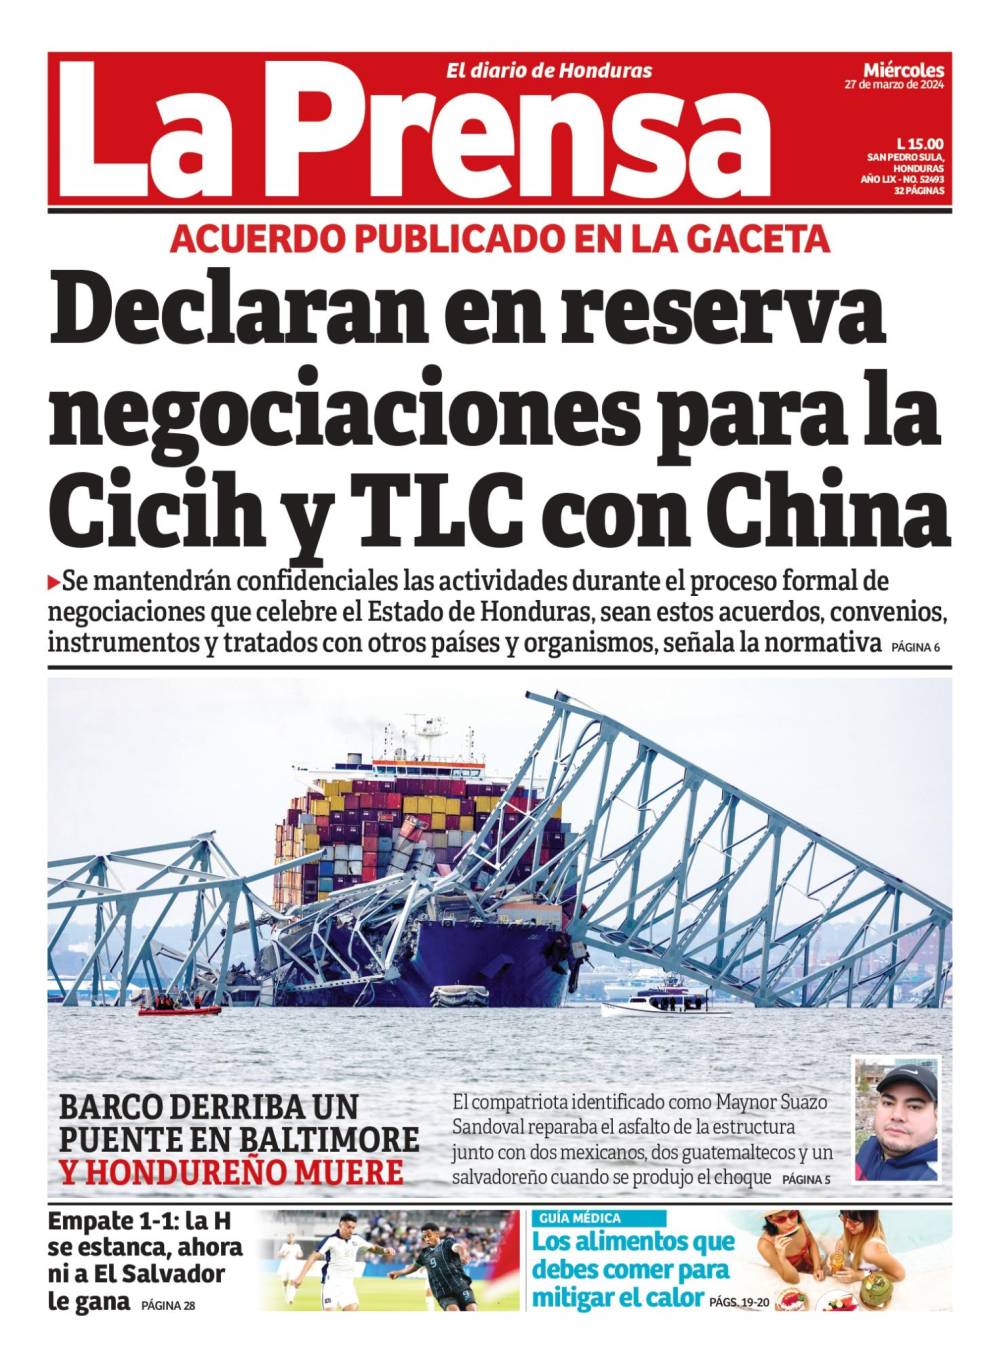 Declaran en reserva negociaciones para la Cicih y TLC con China